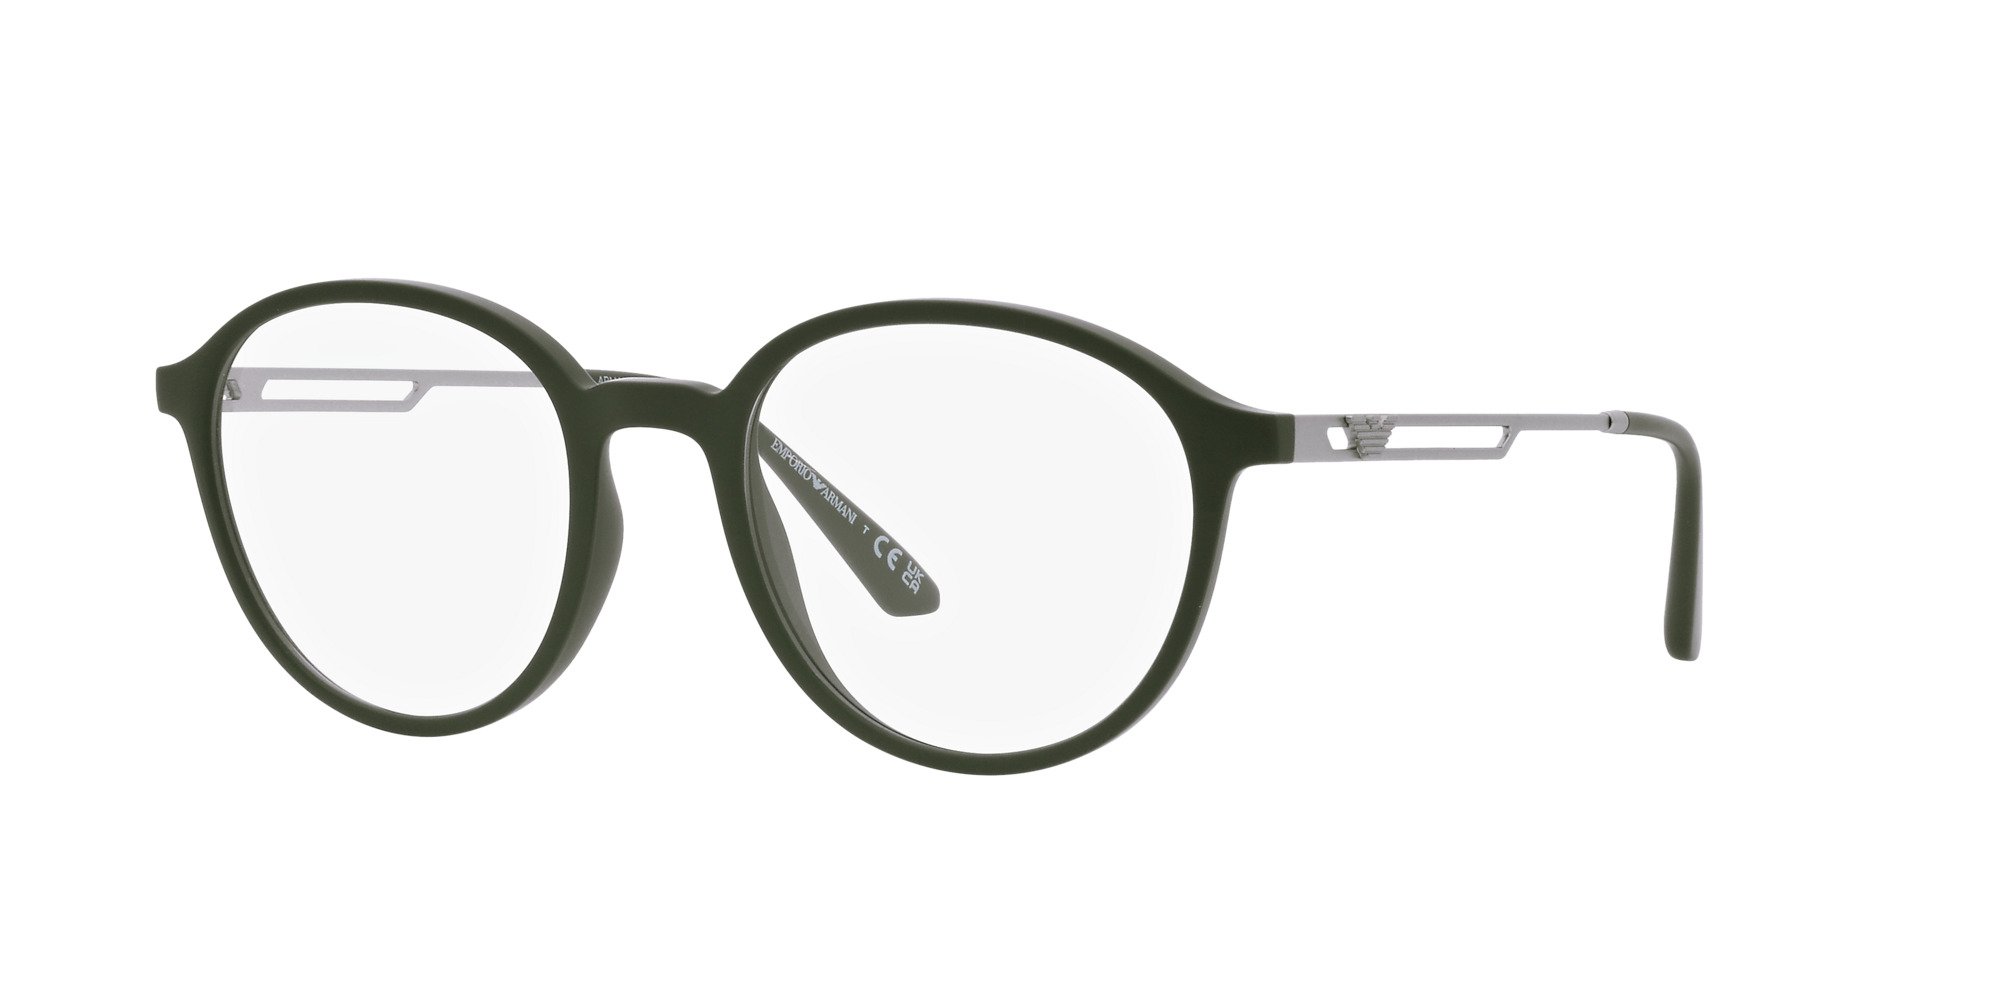 Das Bild zeigt die Korrektionsbrille EA3225 5058 von der Marke Emporio Armani in Grün.